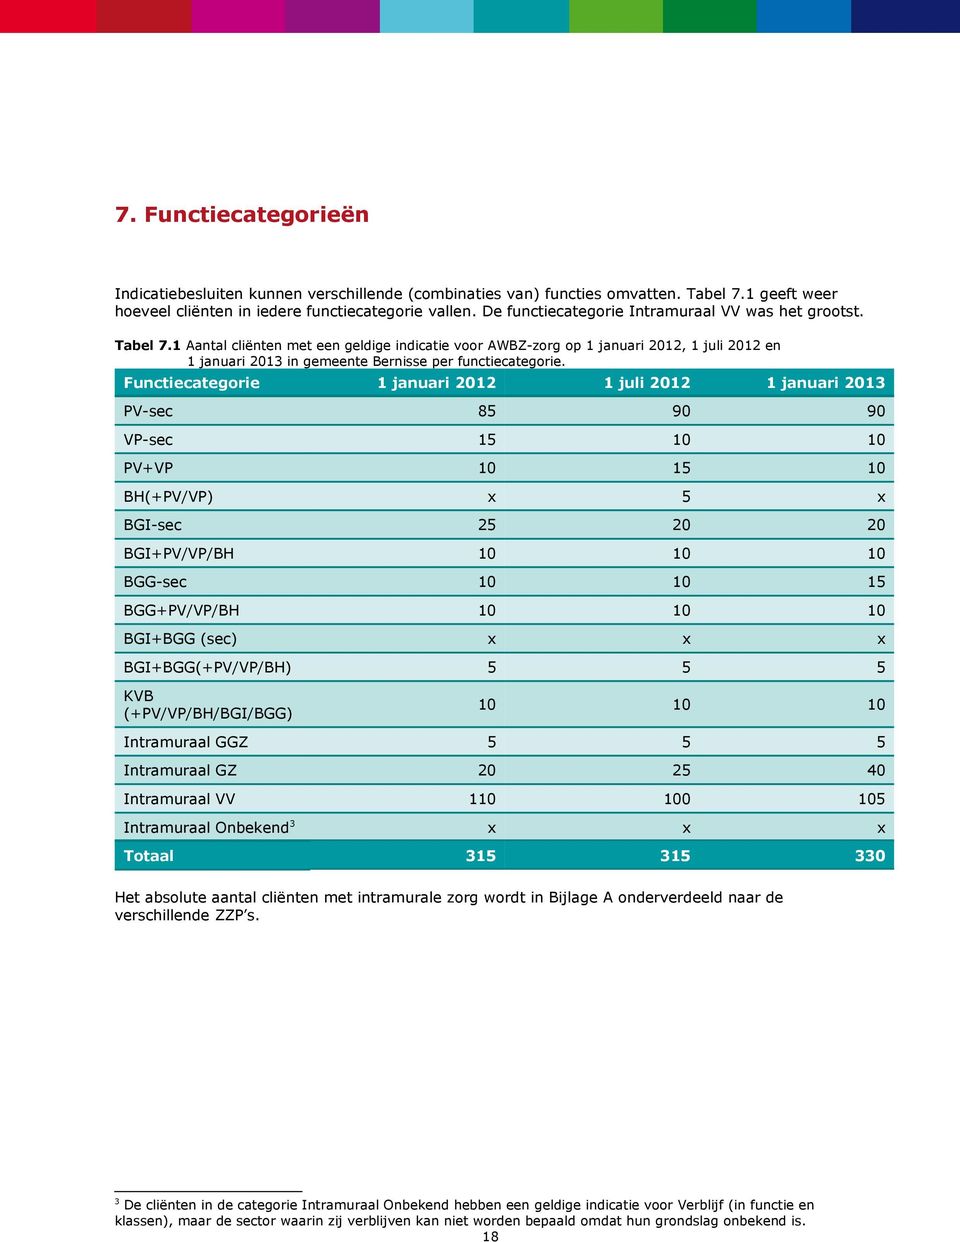 1 Aantal cliënten met een geldige indicatie voor AWBZ-zorg op 1 januari 2012, 1 juli 2012 en 1 januari 2013 in gemeente Bernisse per functiecategorie.